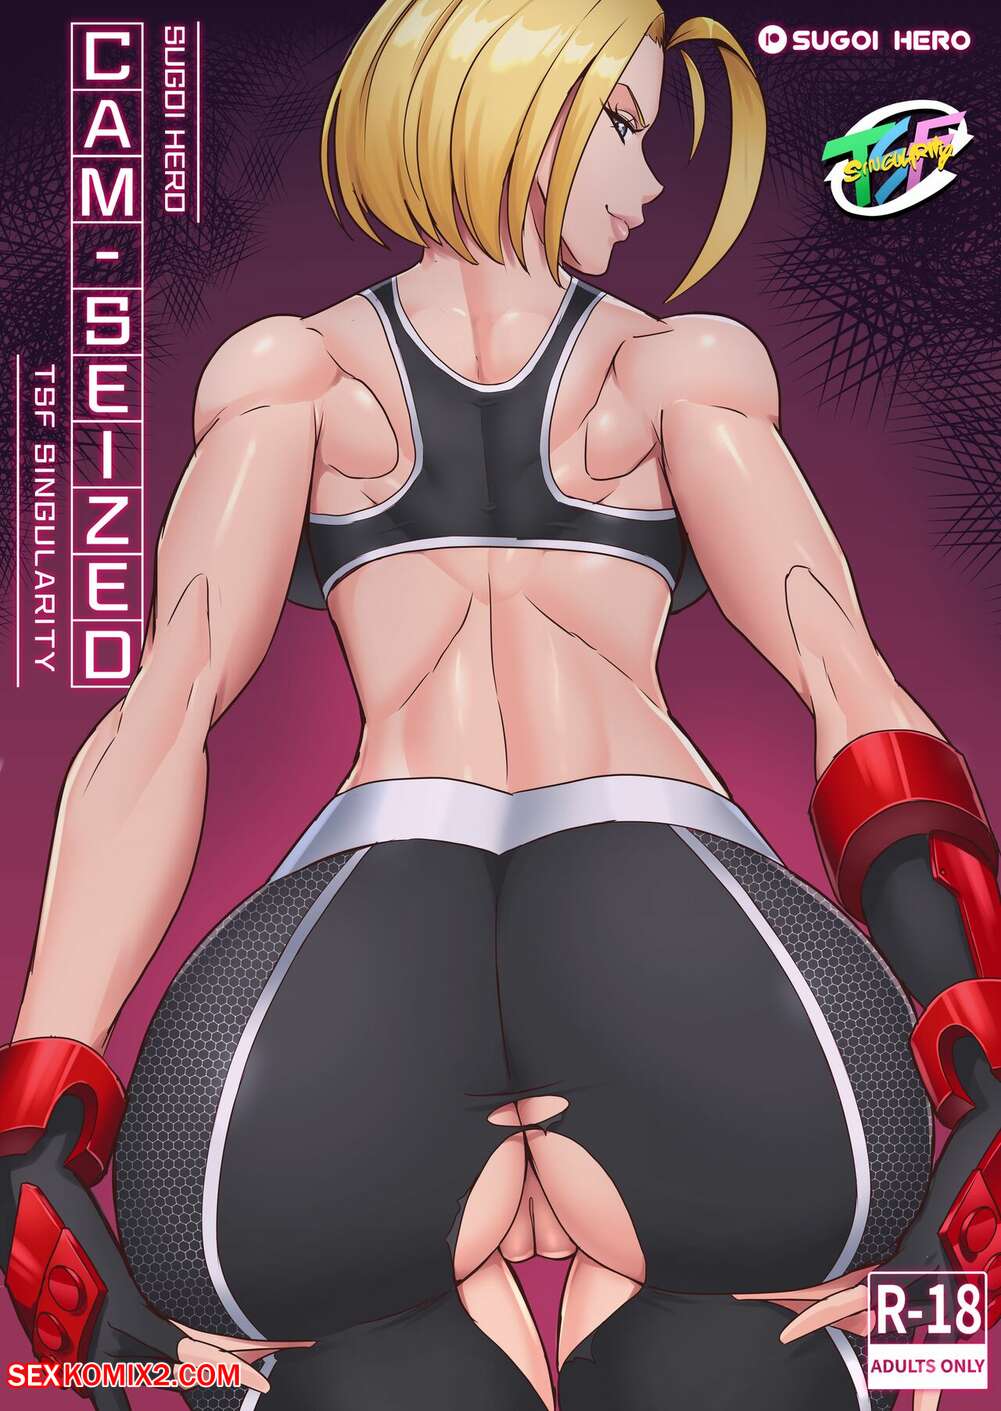 Sex 6xx - âœ…ï¸ Porn comic CamSeized. Street Fighter 6. Sugoi Hero. Sex comic hot sexy  babes | Porn comics in English for adults only | sexkomix2.com